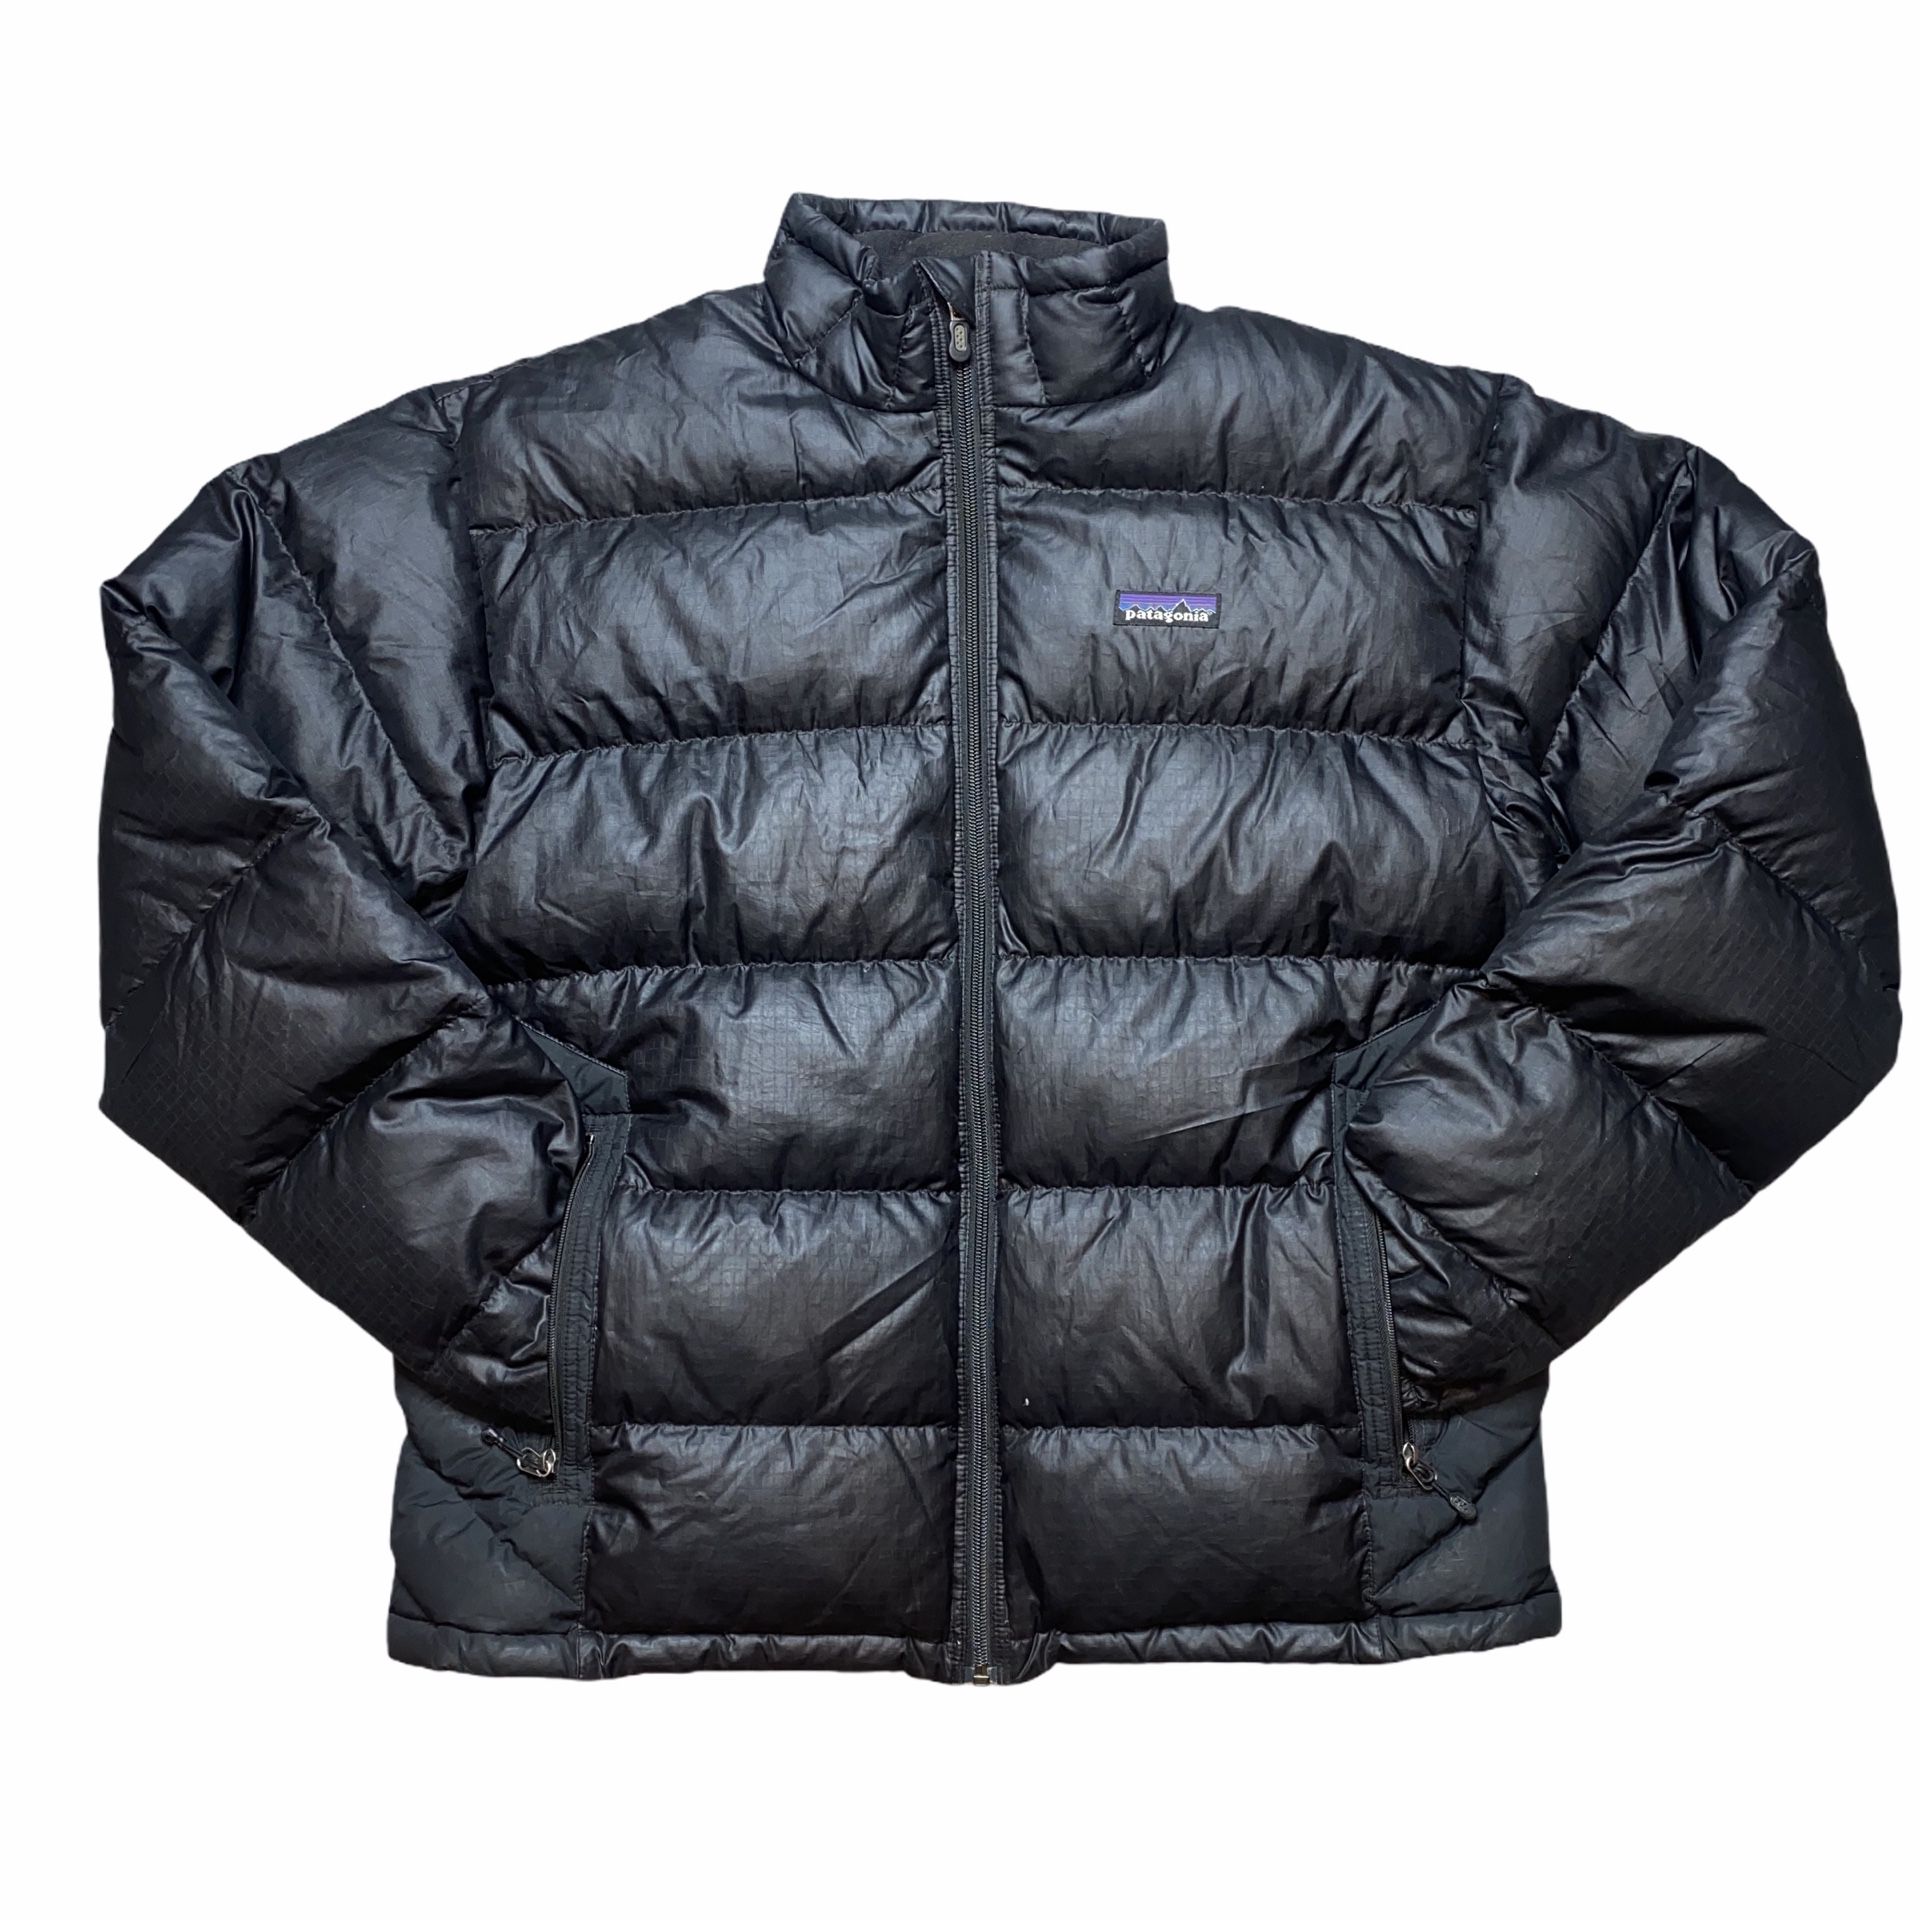 Black Patagonia Zip Up Puffer Jacket Size Mens Medium